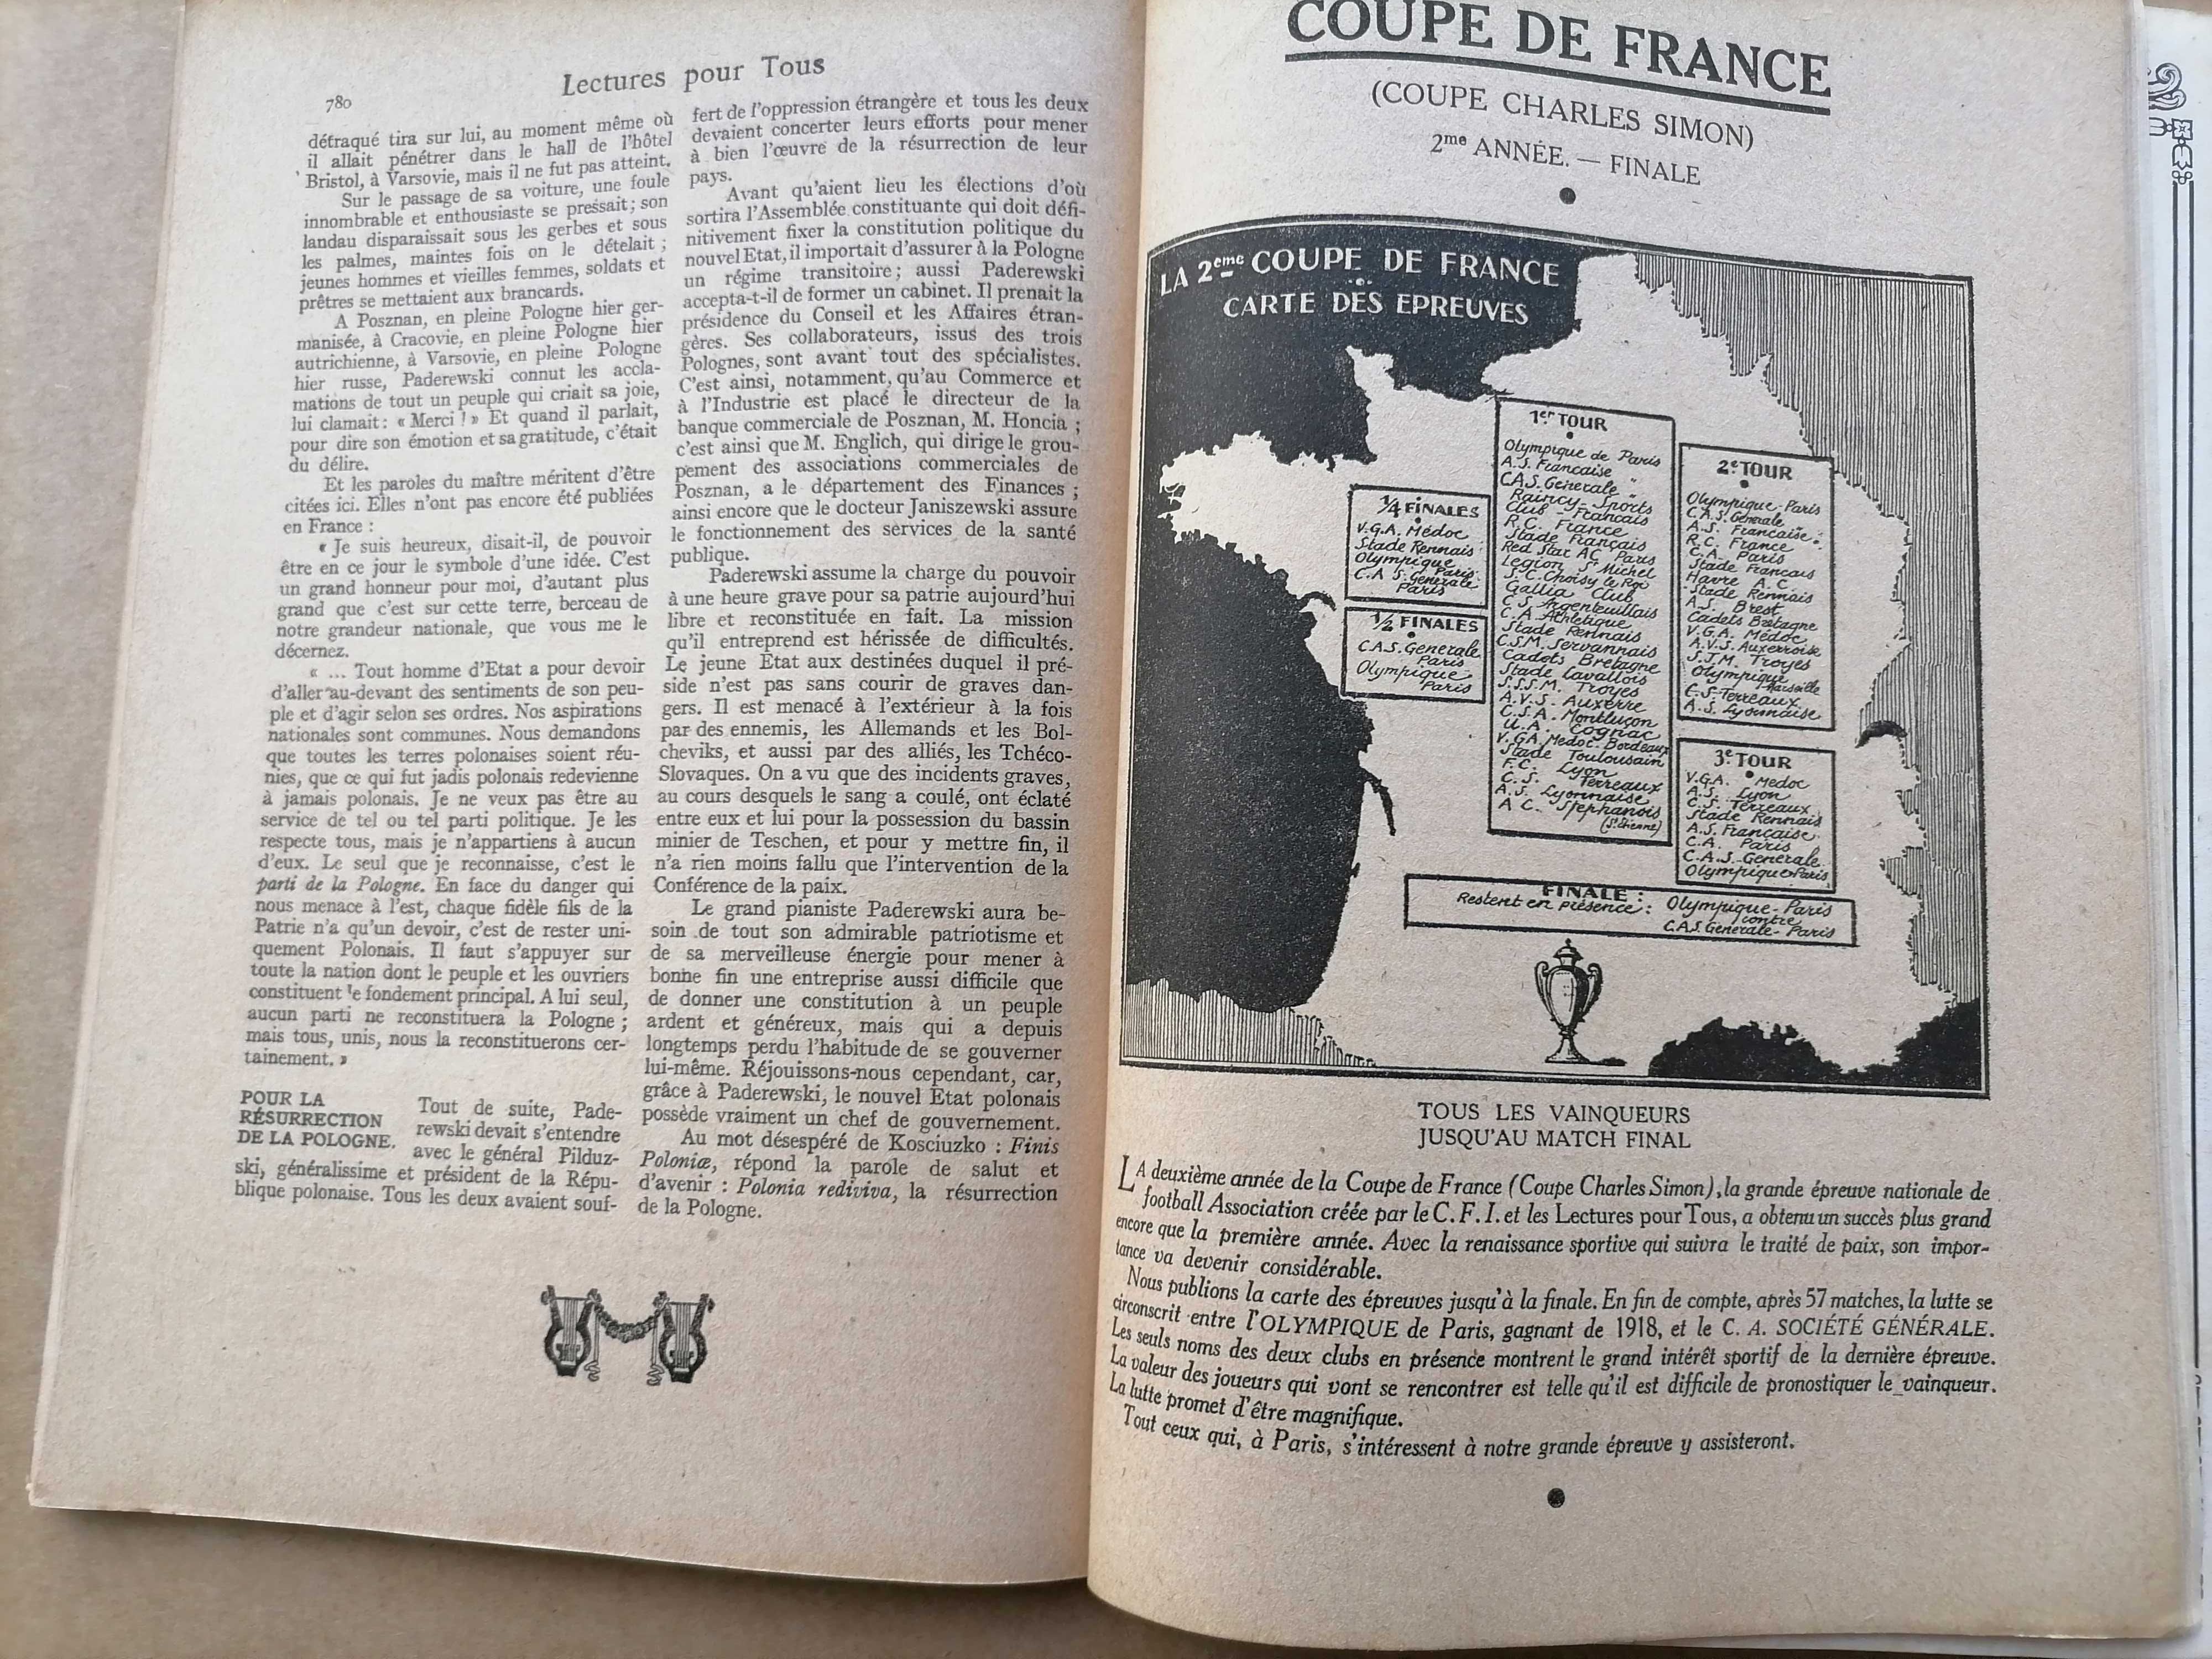 Lectures Pour Tous 1919 Finale Coupe de France - Olimpique vs C. A. S.